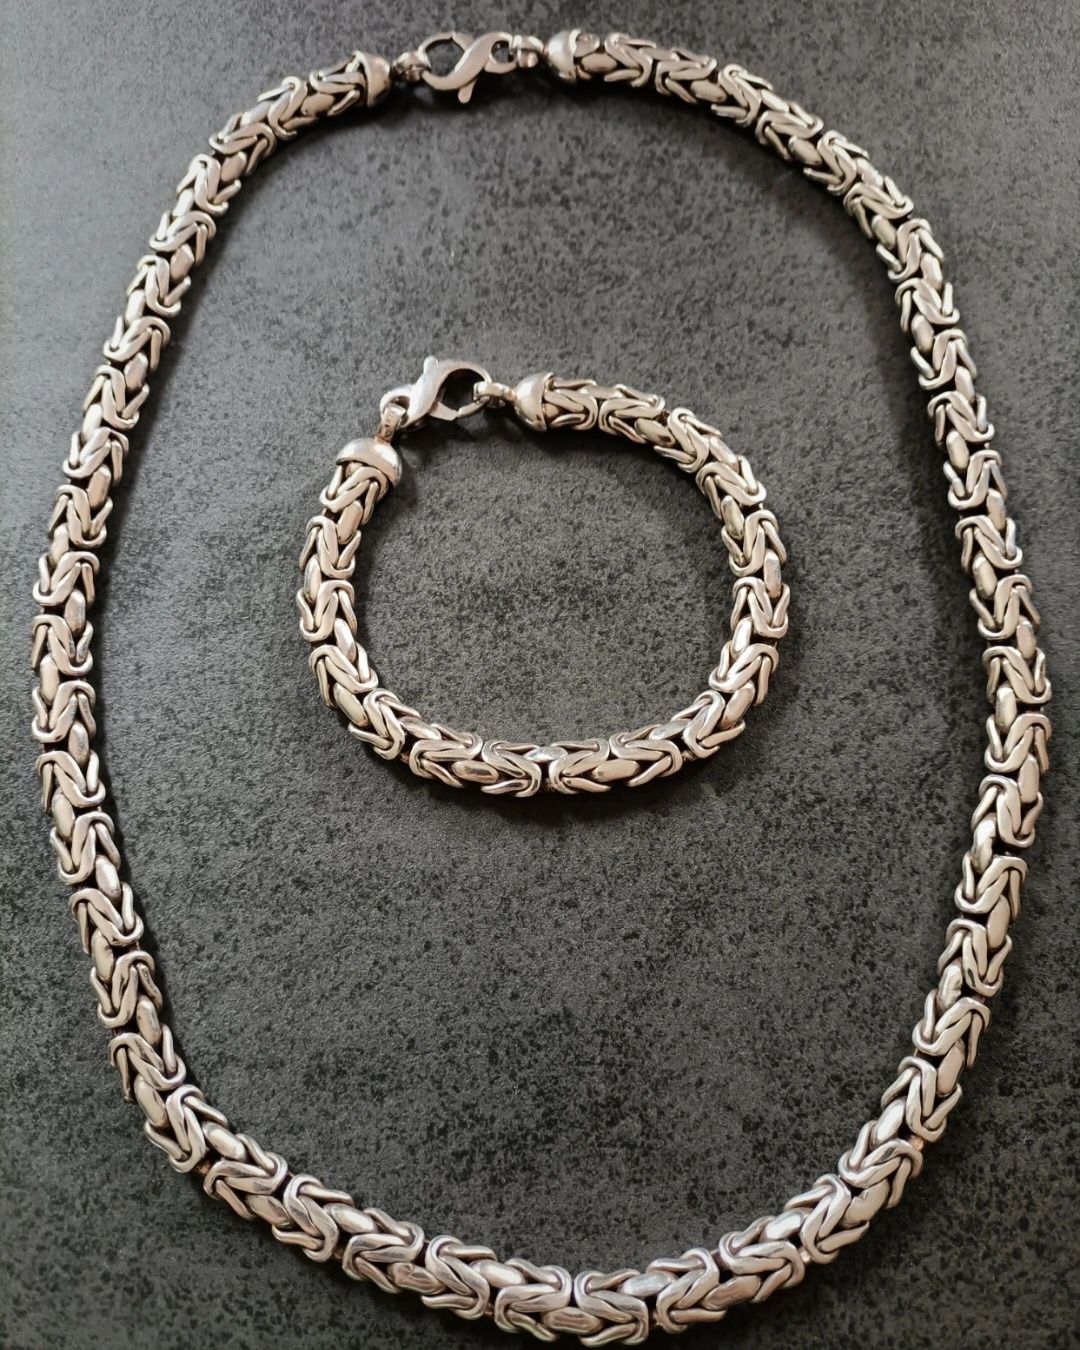 Zestaw srebrny męski Królewski bizantyjski łańcuch i bransoleta 153g